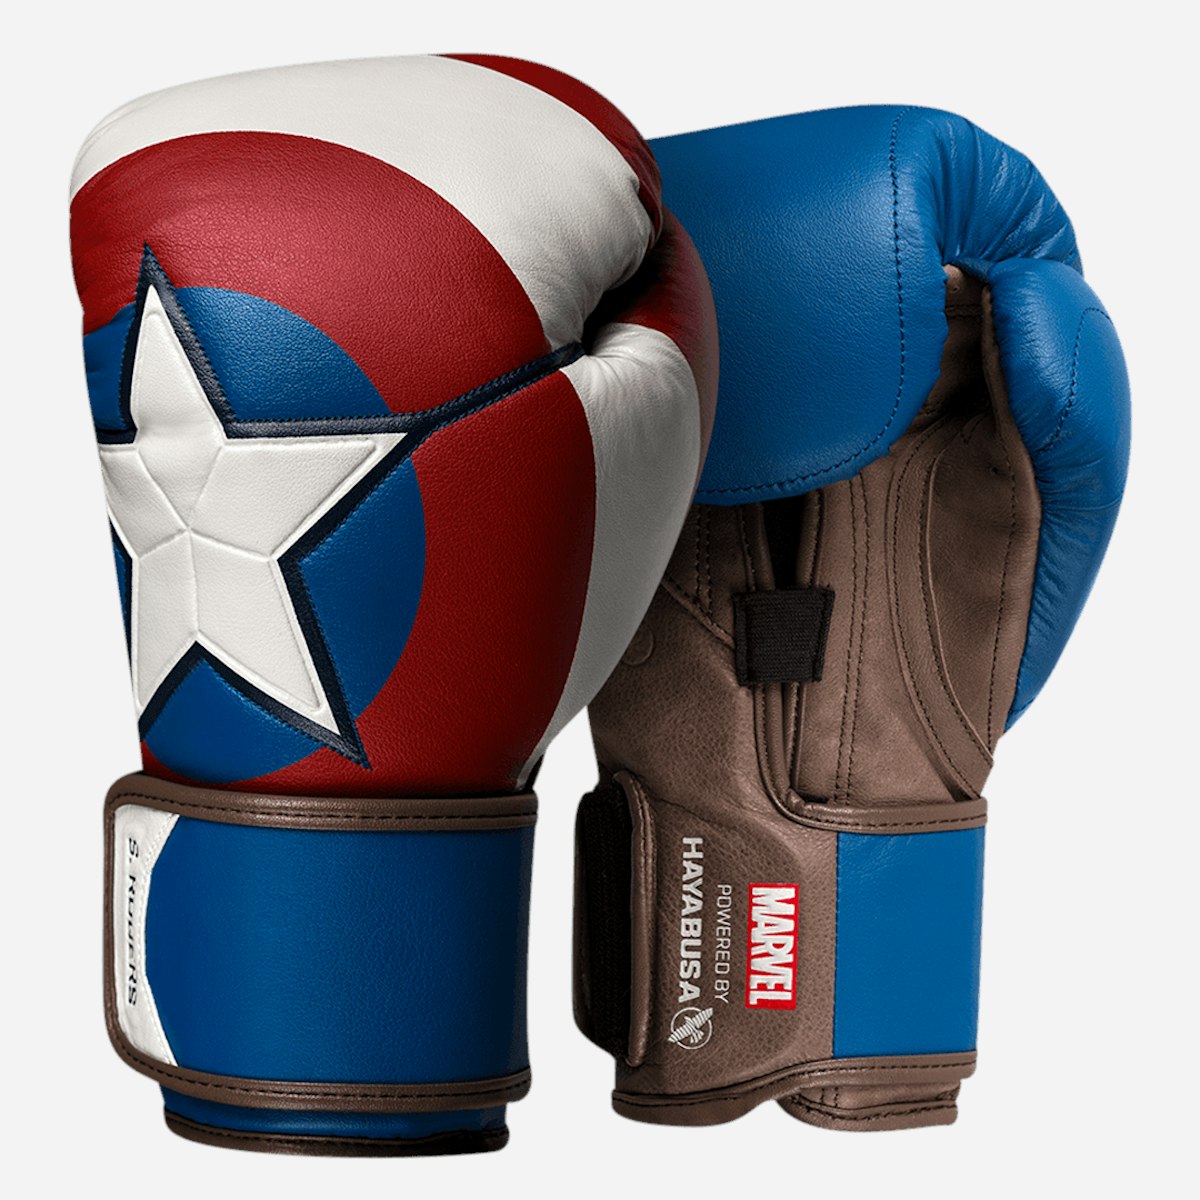 Marvel's Captain America Boxing Gloves